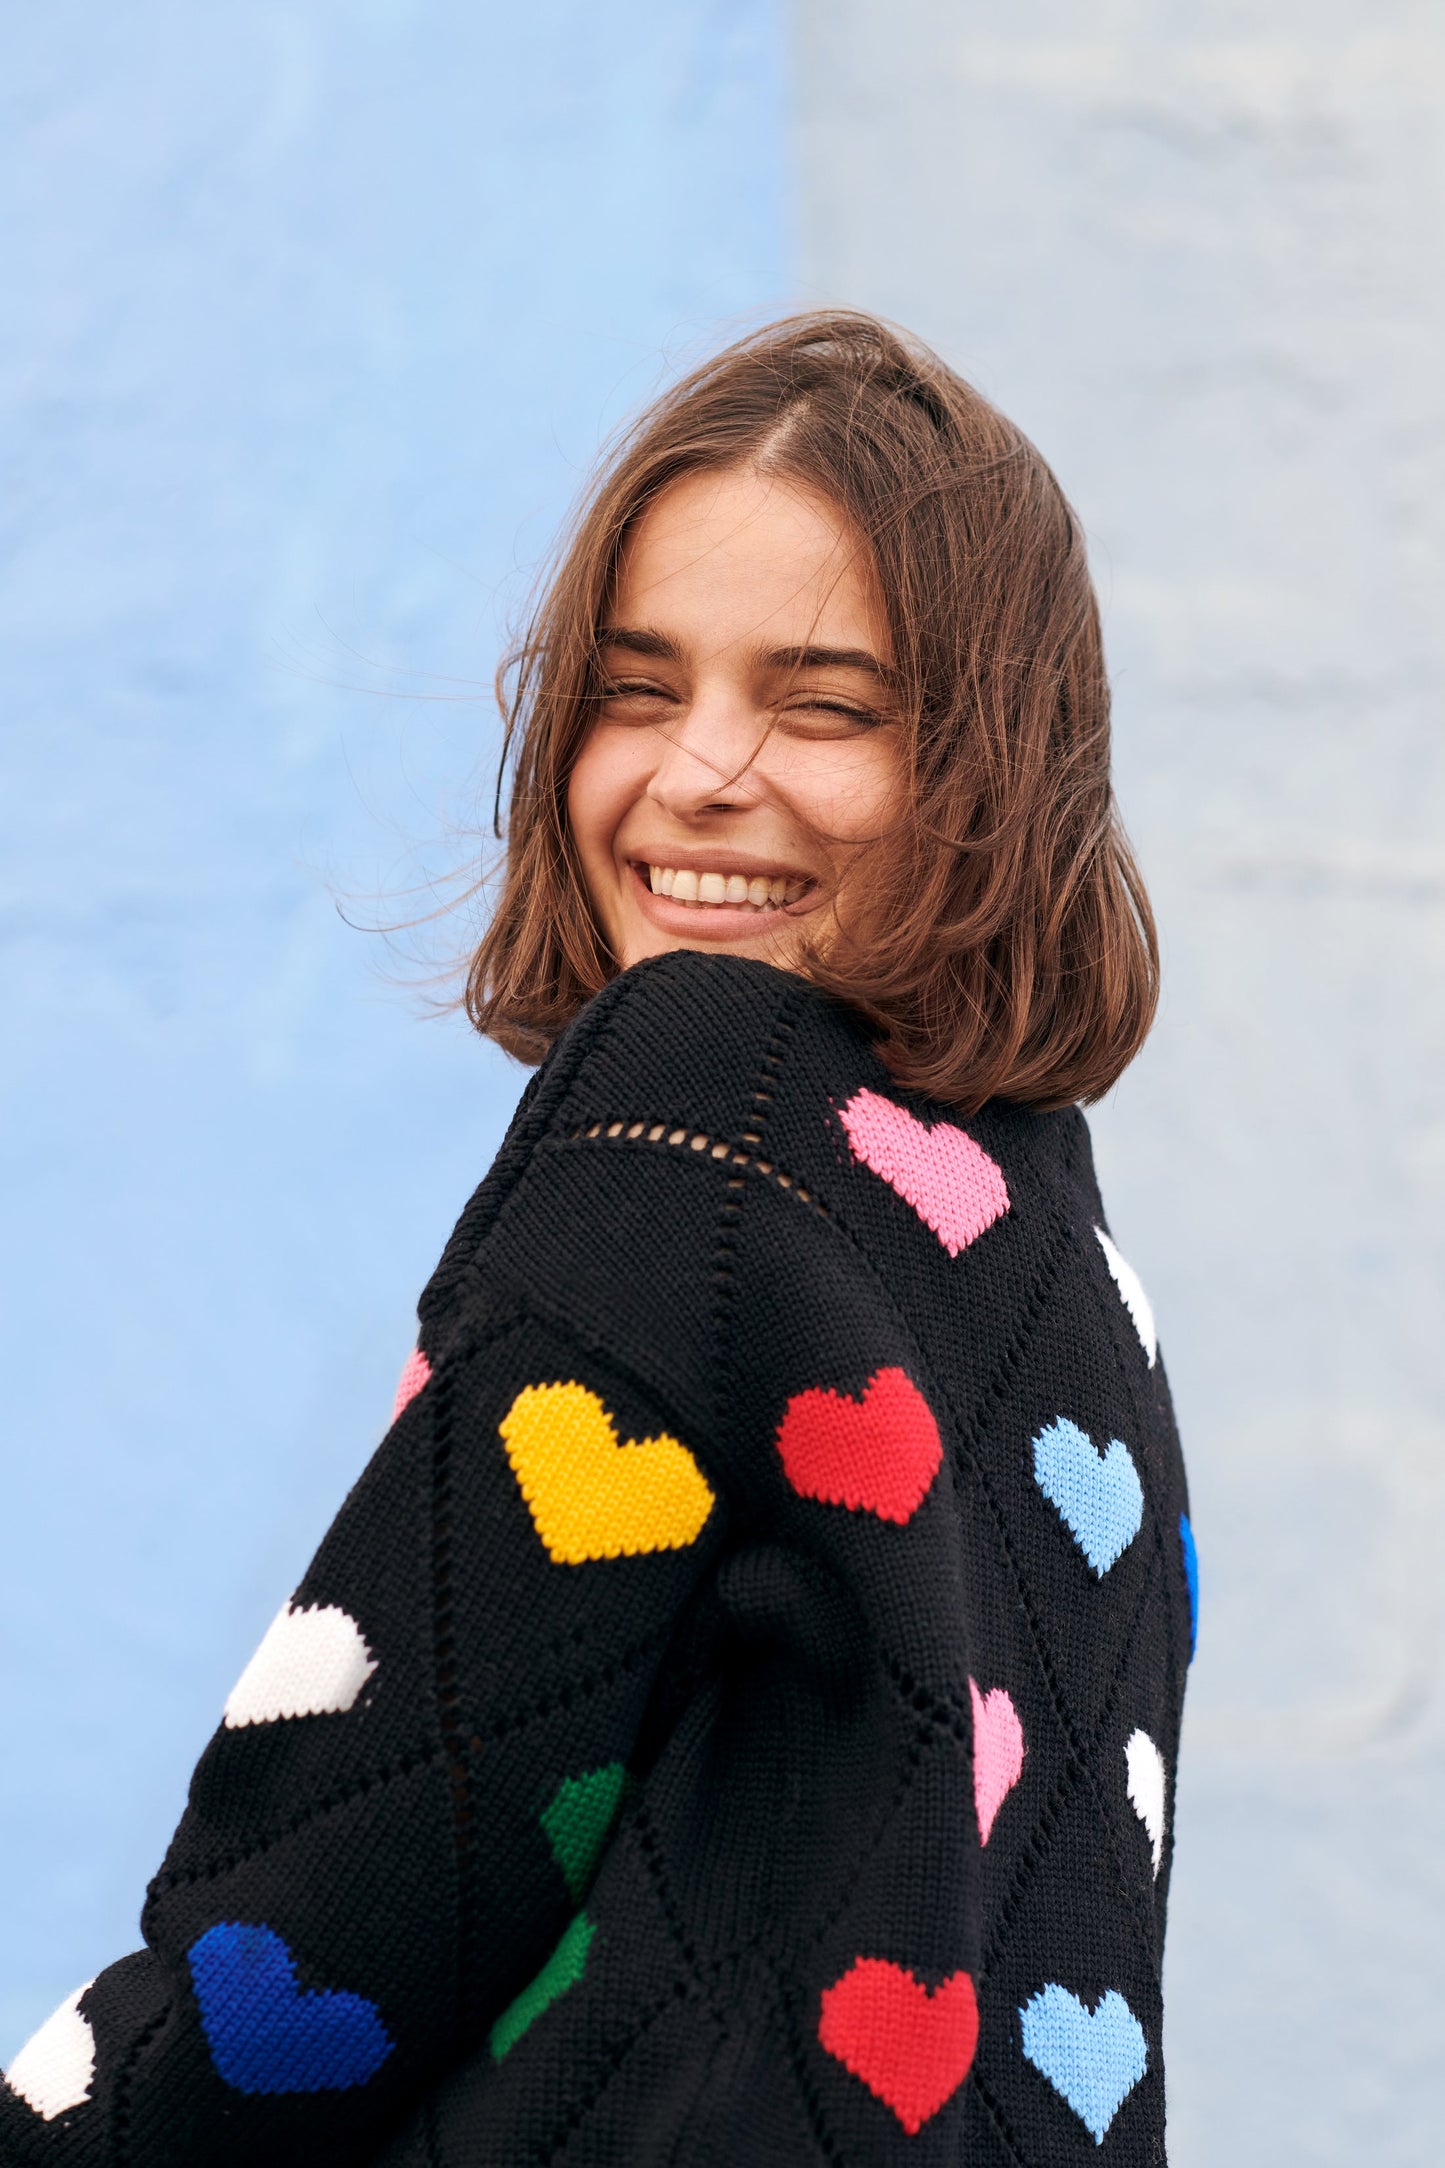 Gigi Knitwear Love heart sweater in multicolor